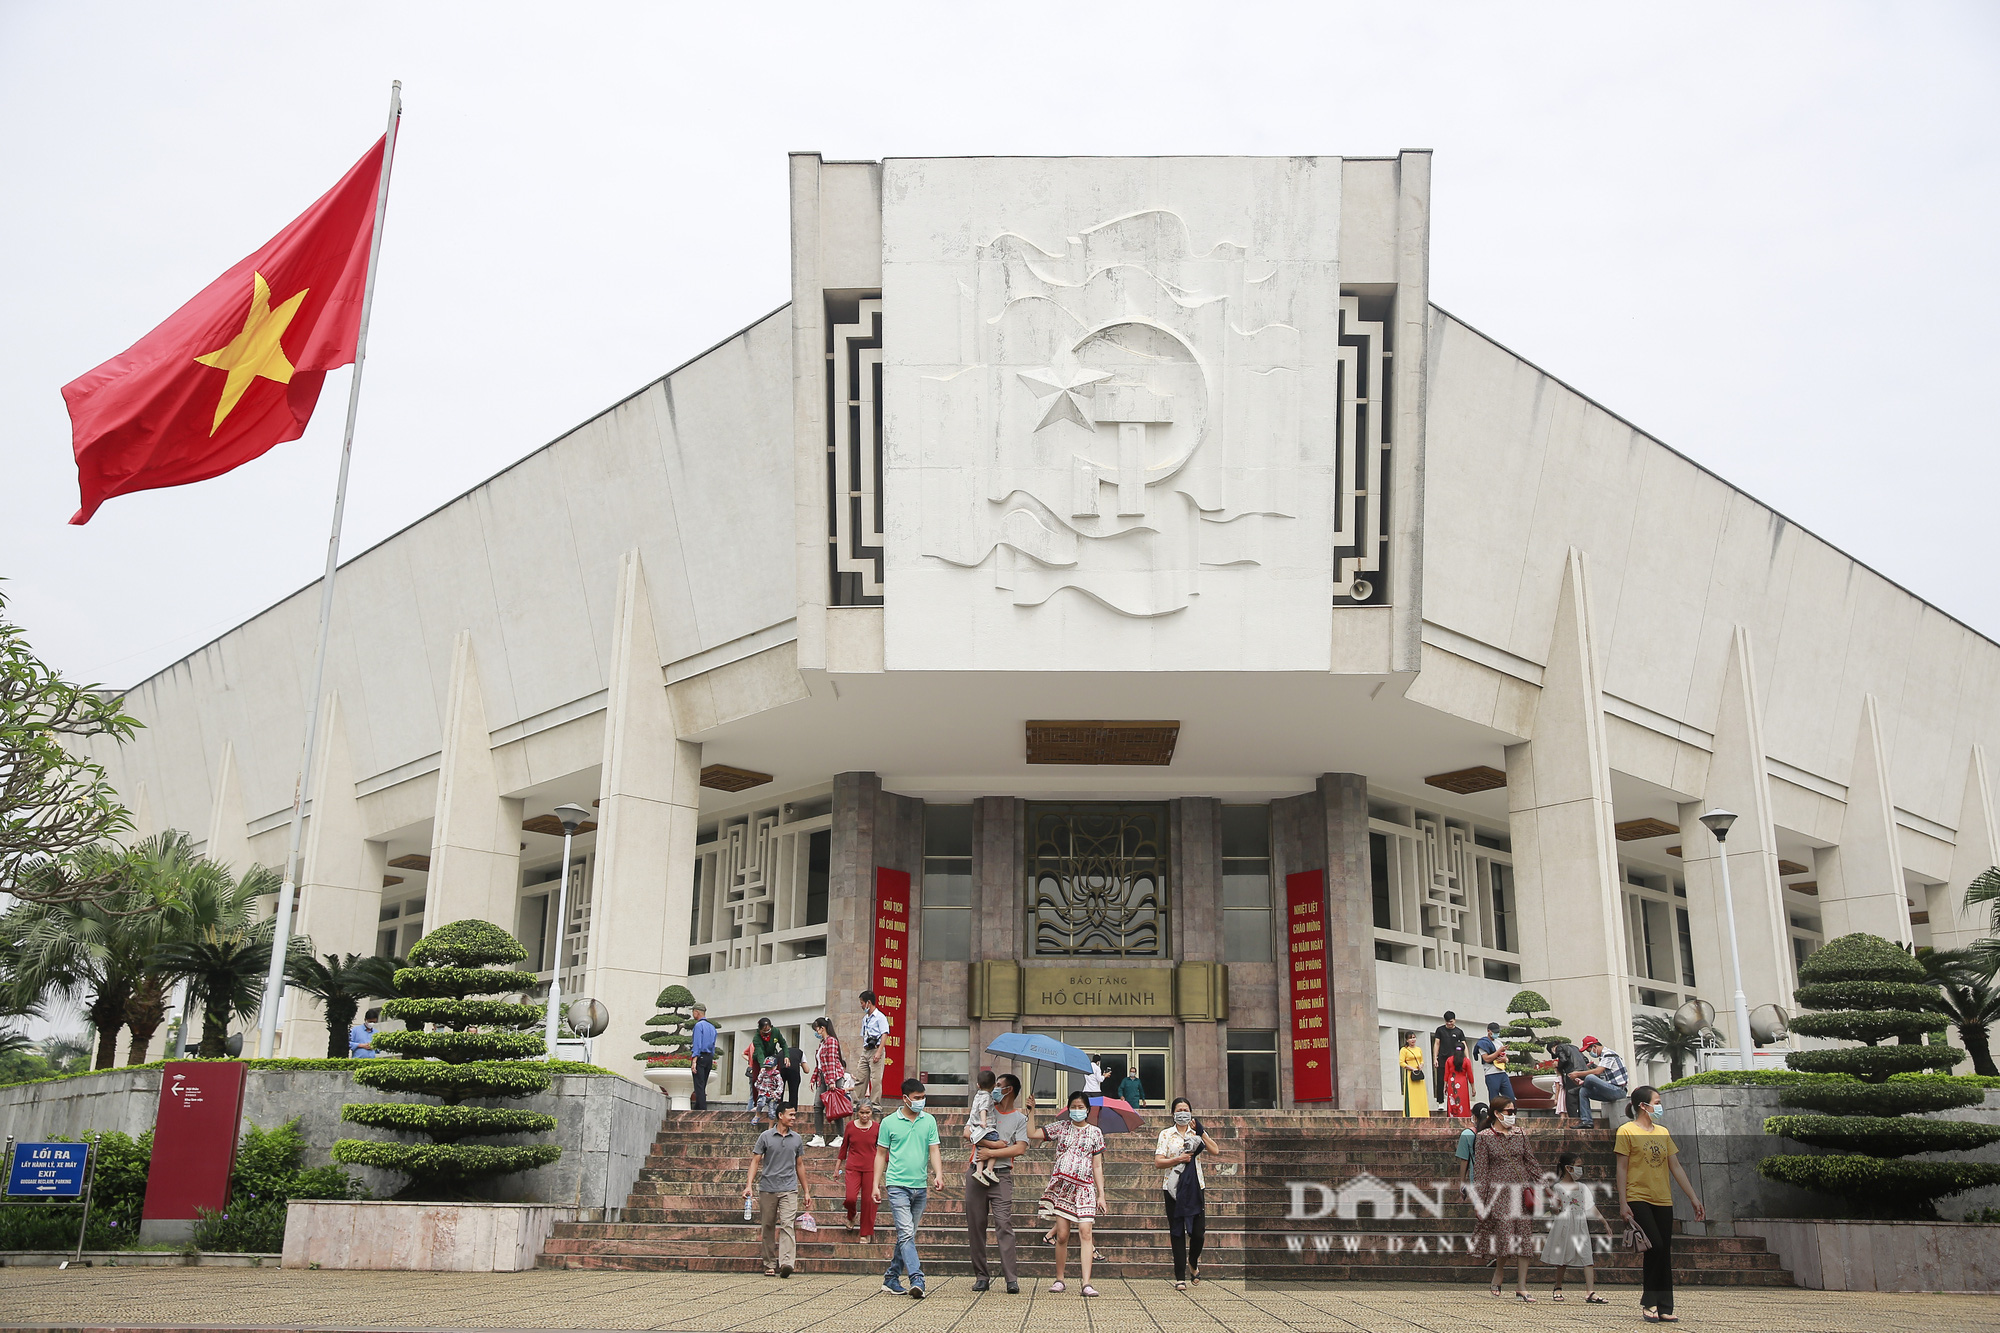 Bất ngờ lượng du khách tham quan lăng Bác, bảo tàng tại Hà Nội trong sáng 30/4 - Ảnh 5.